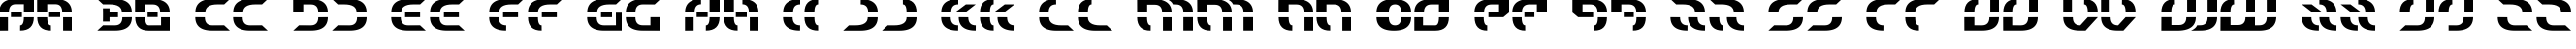 Пример написания английского алфавита шрифтом Ewok